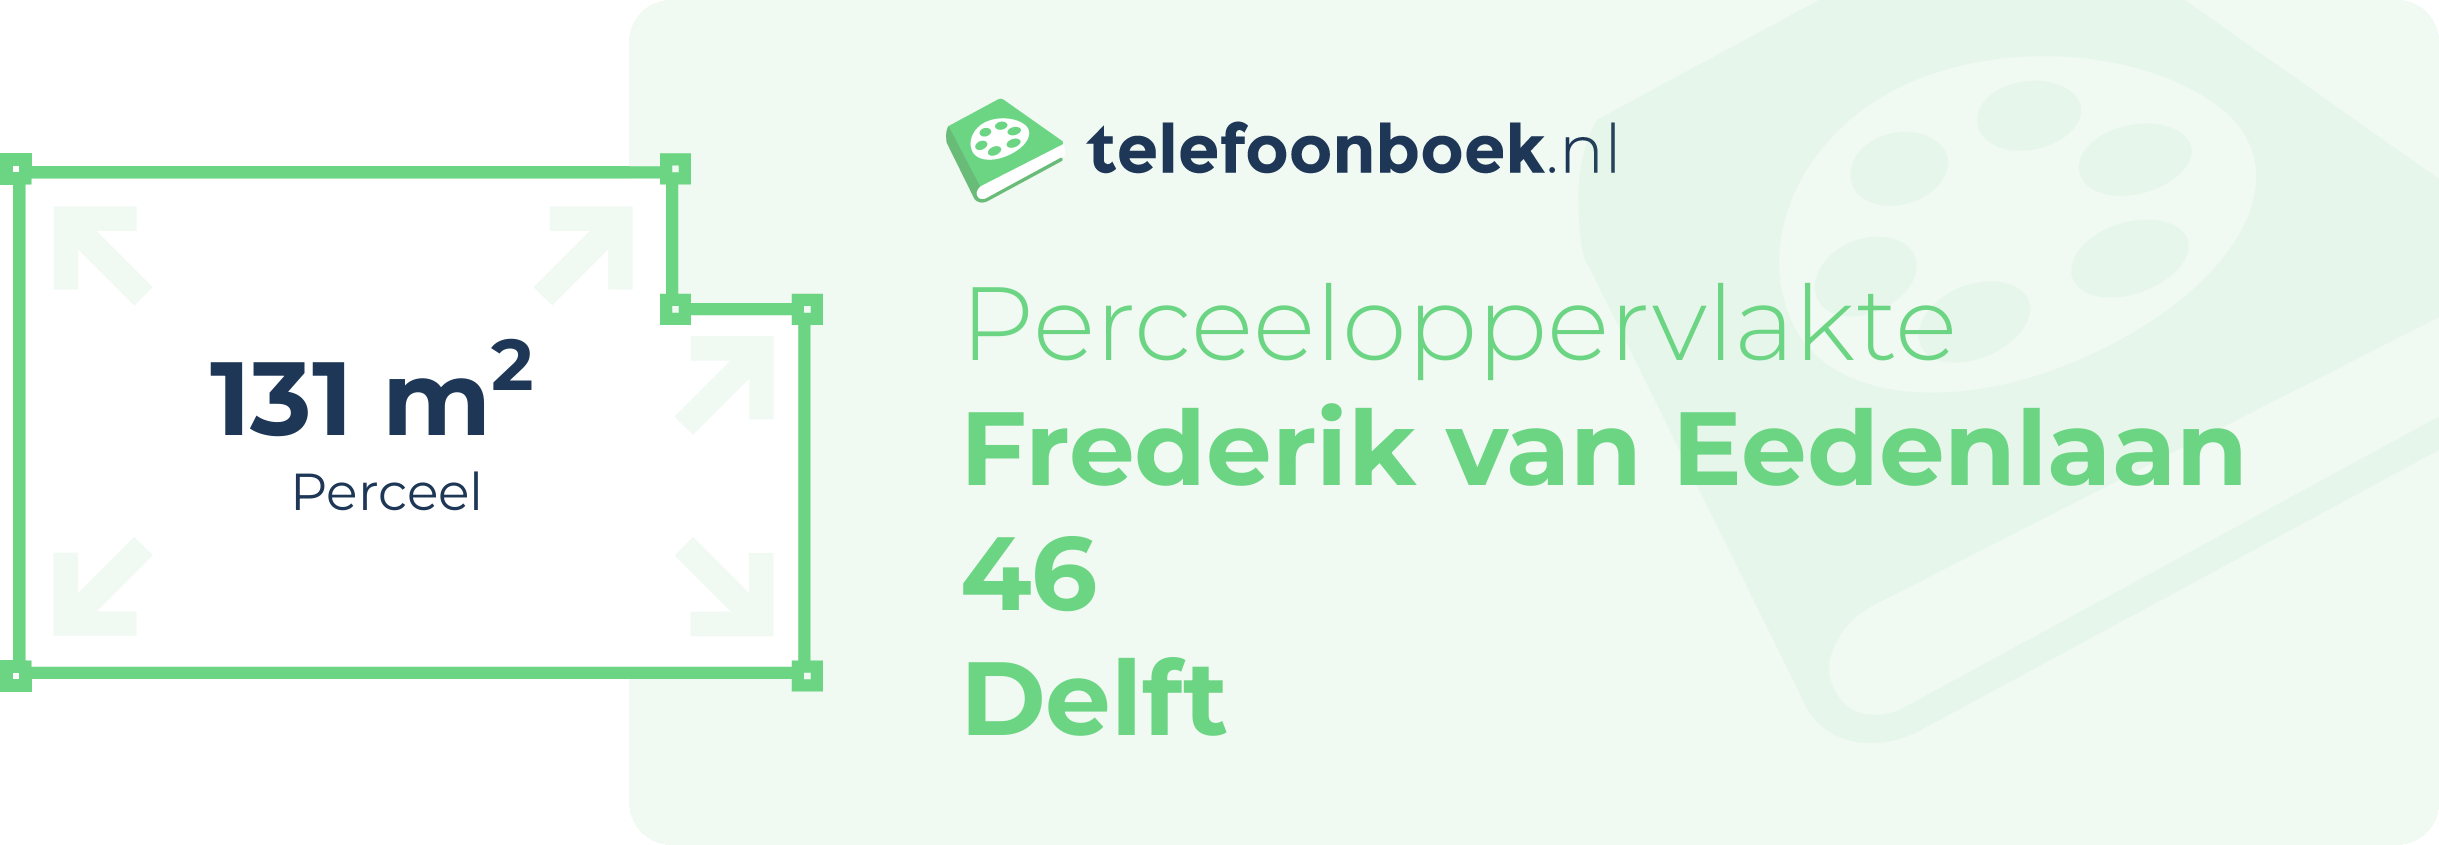 Perceeloppervlakte Frederik Van Eedenlaan 46 Delft